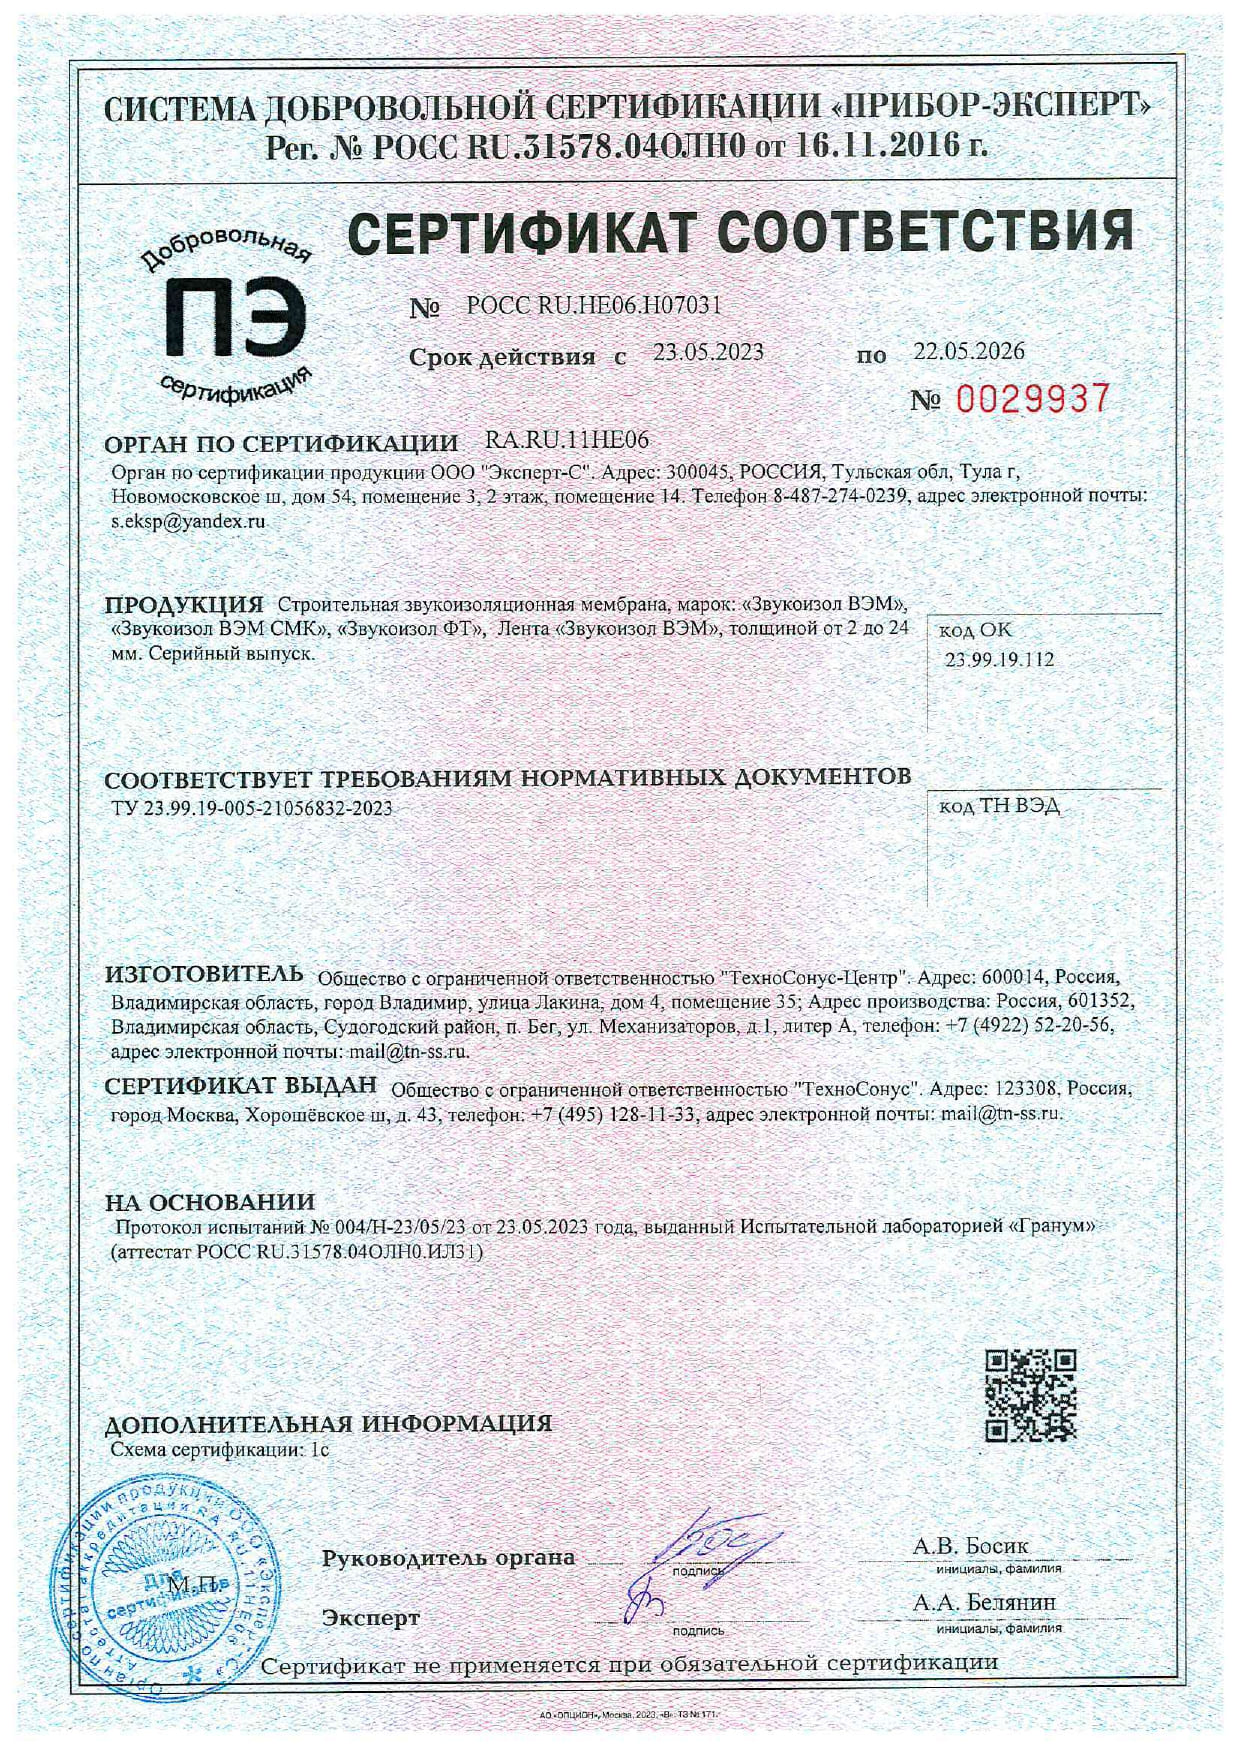 Сертификат соответствия ГОСТ Р до 22.05.2028г.